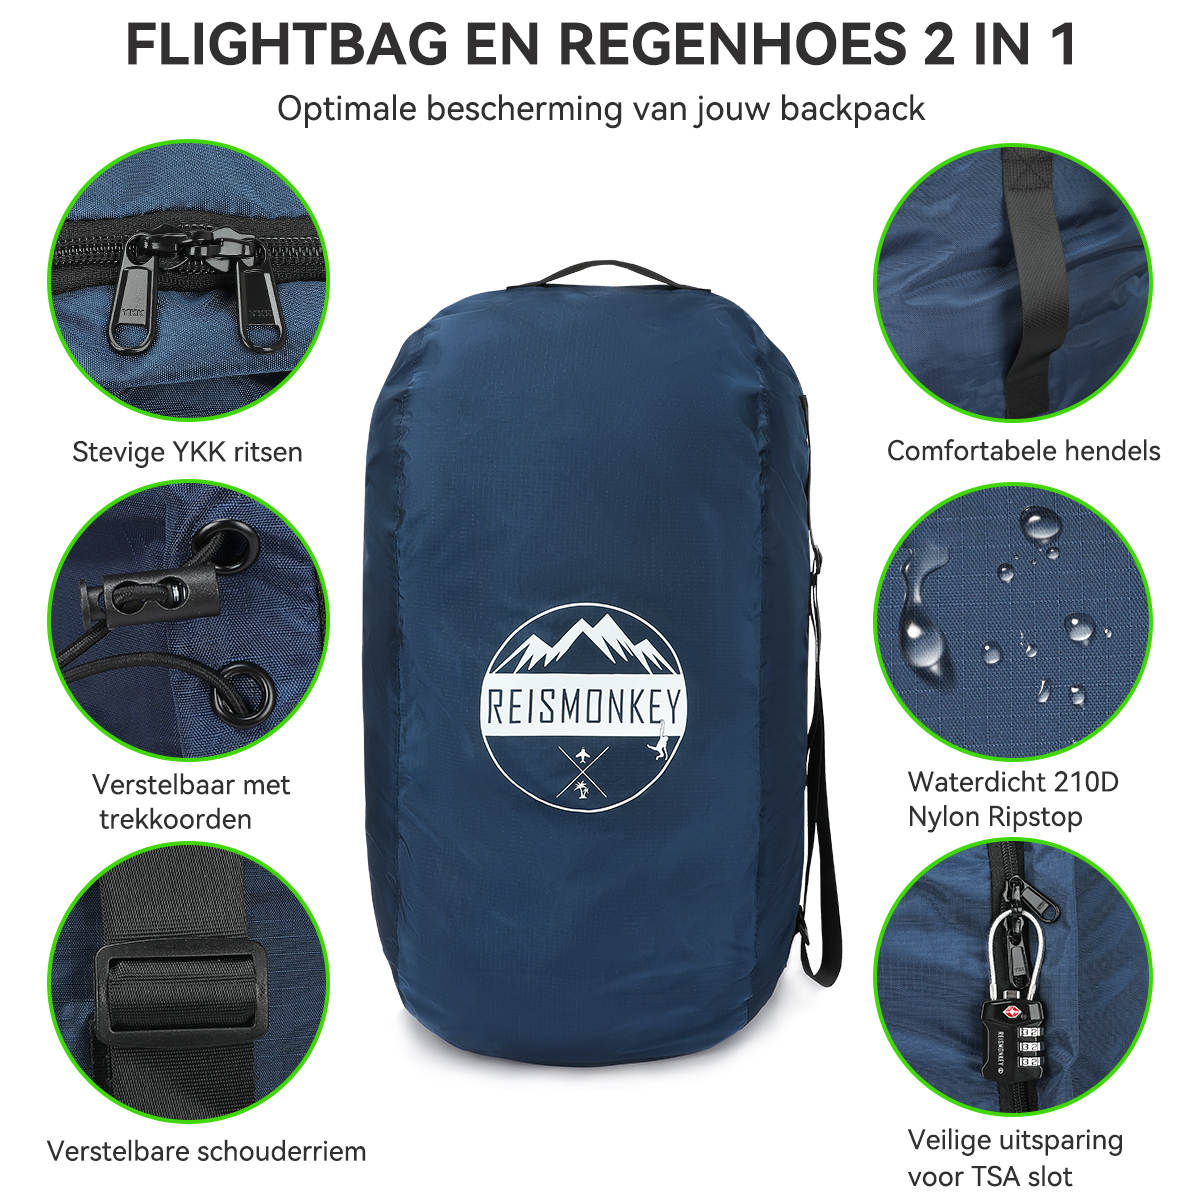 Wens Storing Gepensioneerd Flightbag kopen? Ga voor een flightback en regenhoes combi